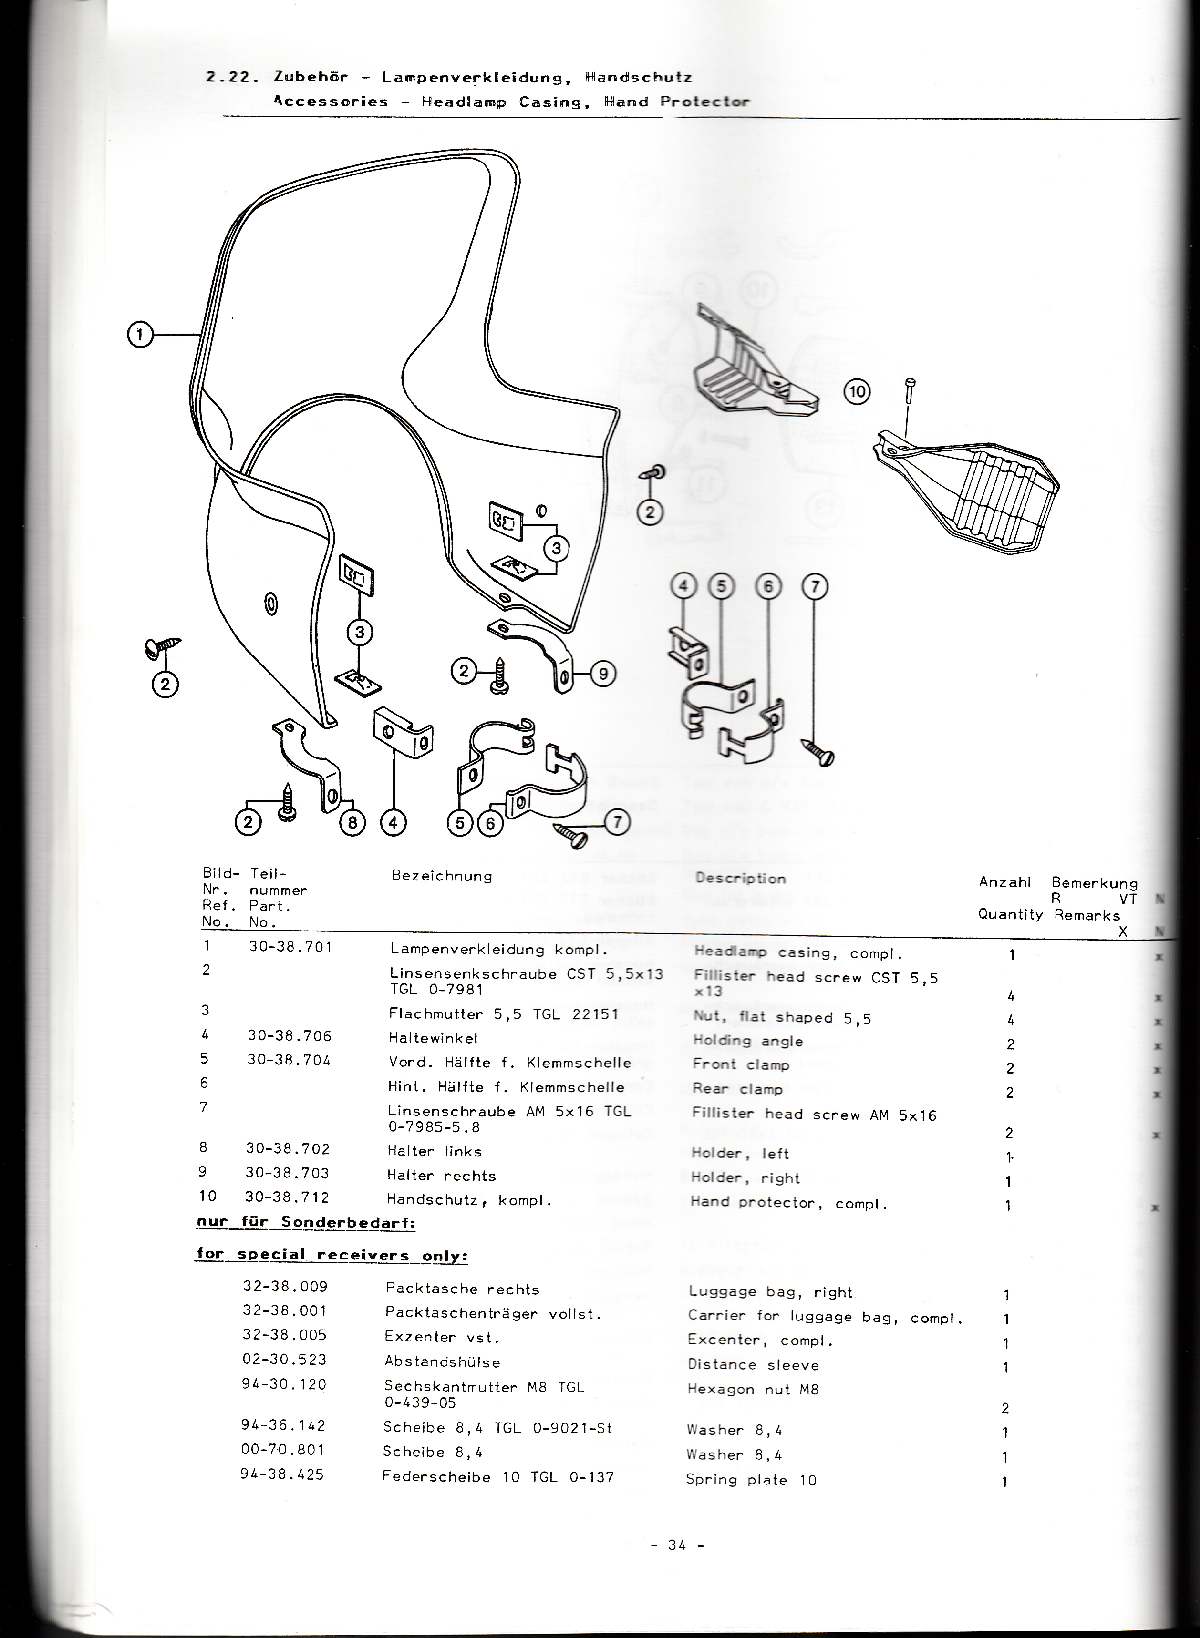 Katalog MZ 251 ETZ - 2.22. Zubehör - Lampenverkleidung, Handschutz 